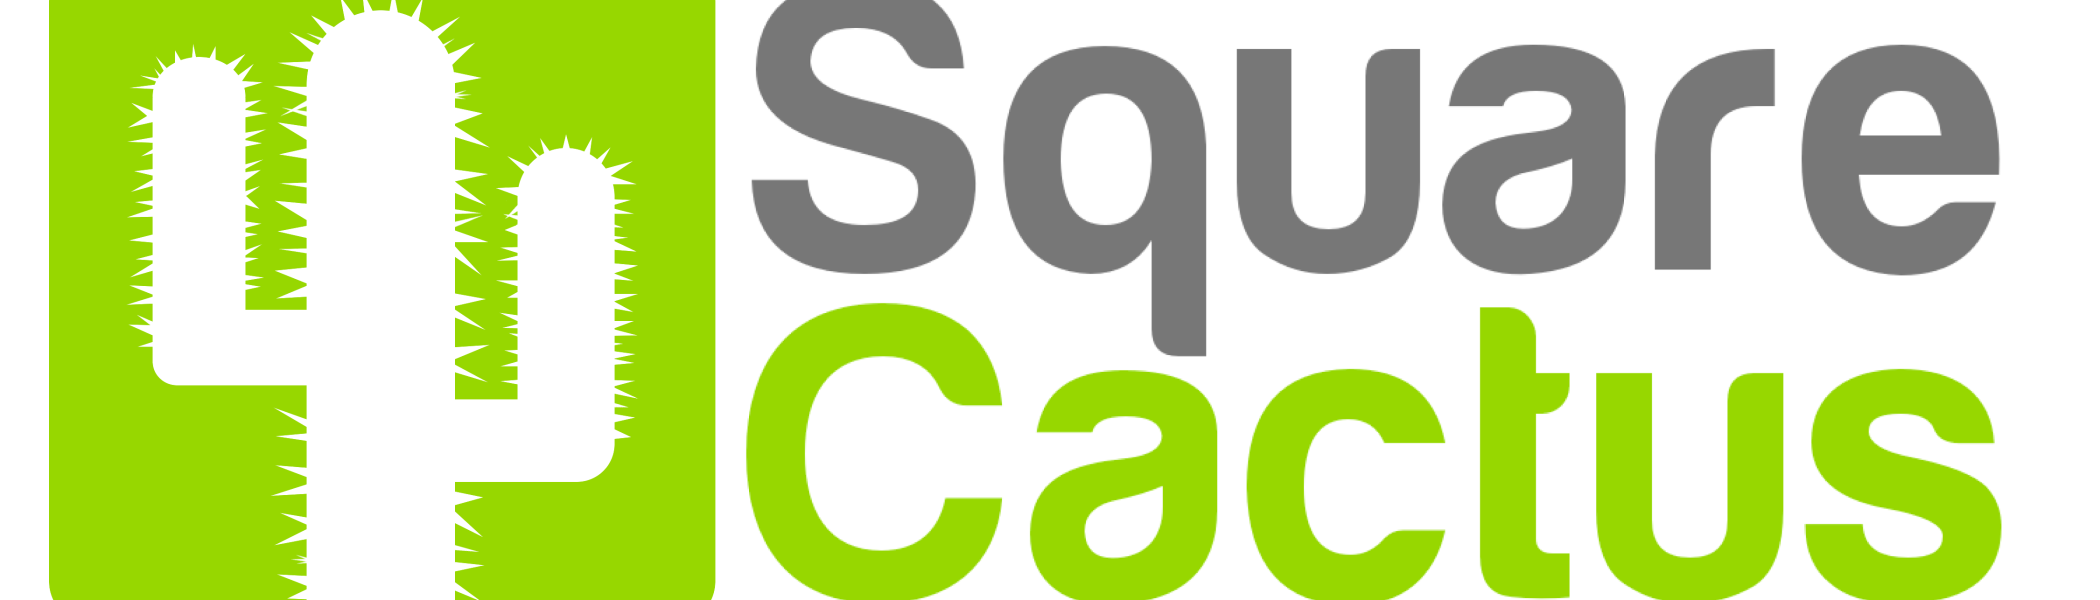 SquareCactusLogo